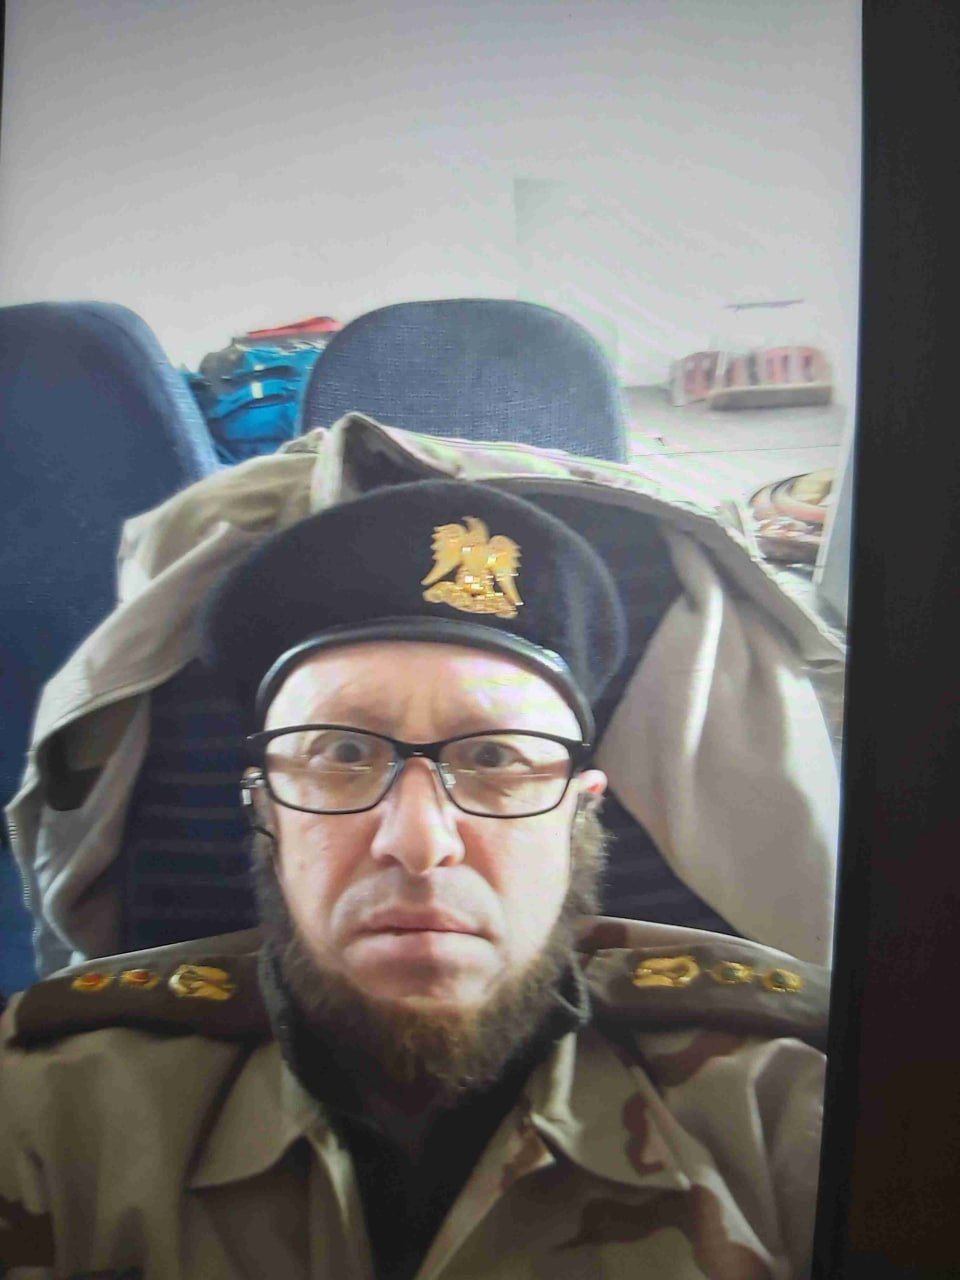 Полковник из Триполи, торговец из Сирии: в сеть слили образы Пригожина, которые он использовал для работы ЧВК — фото